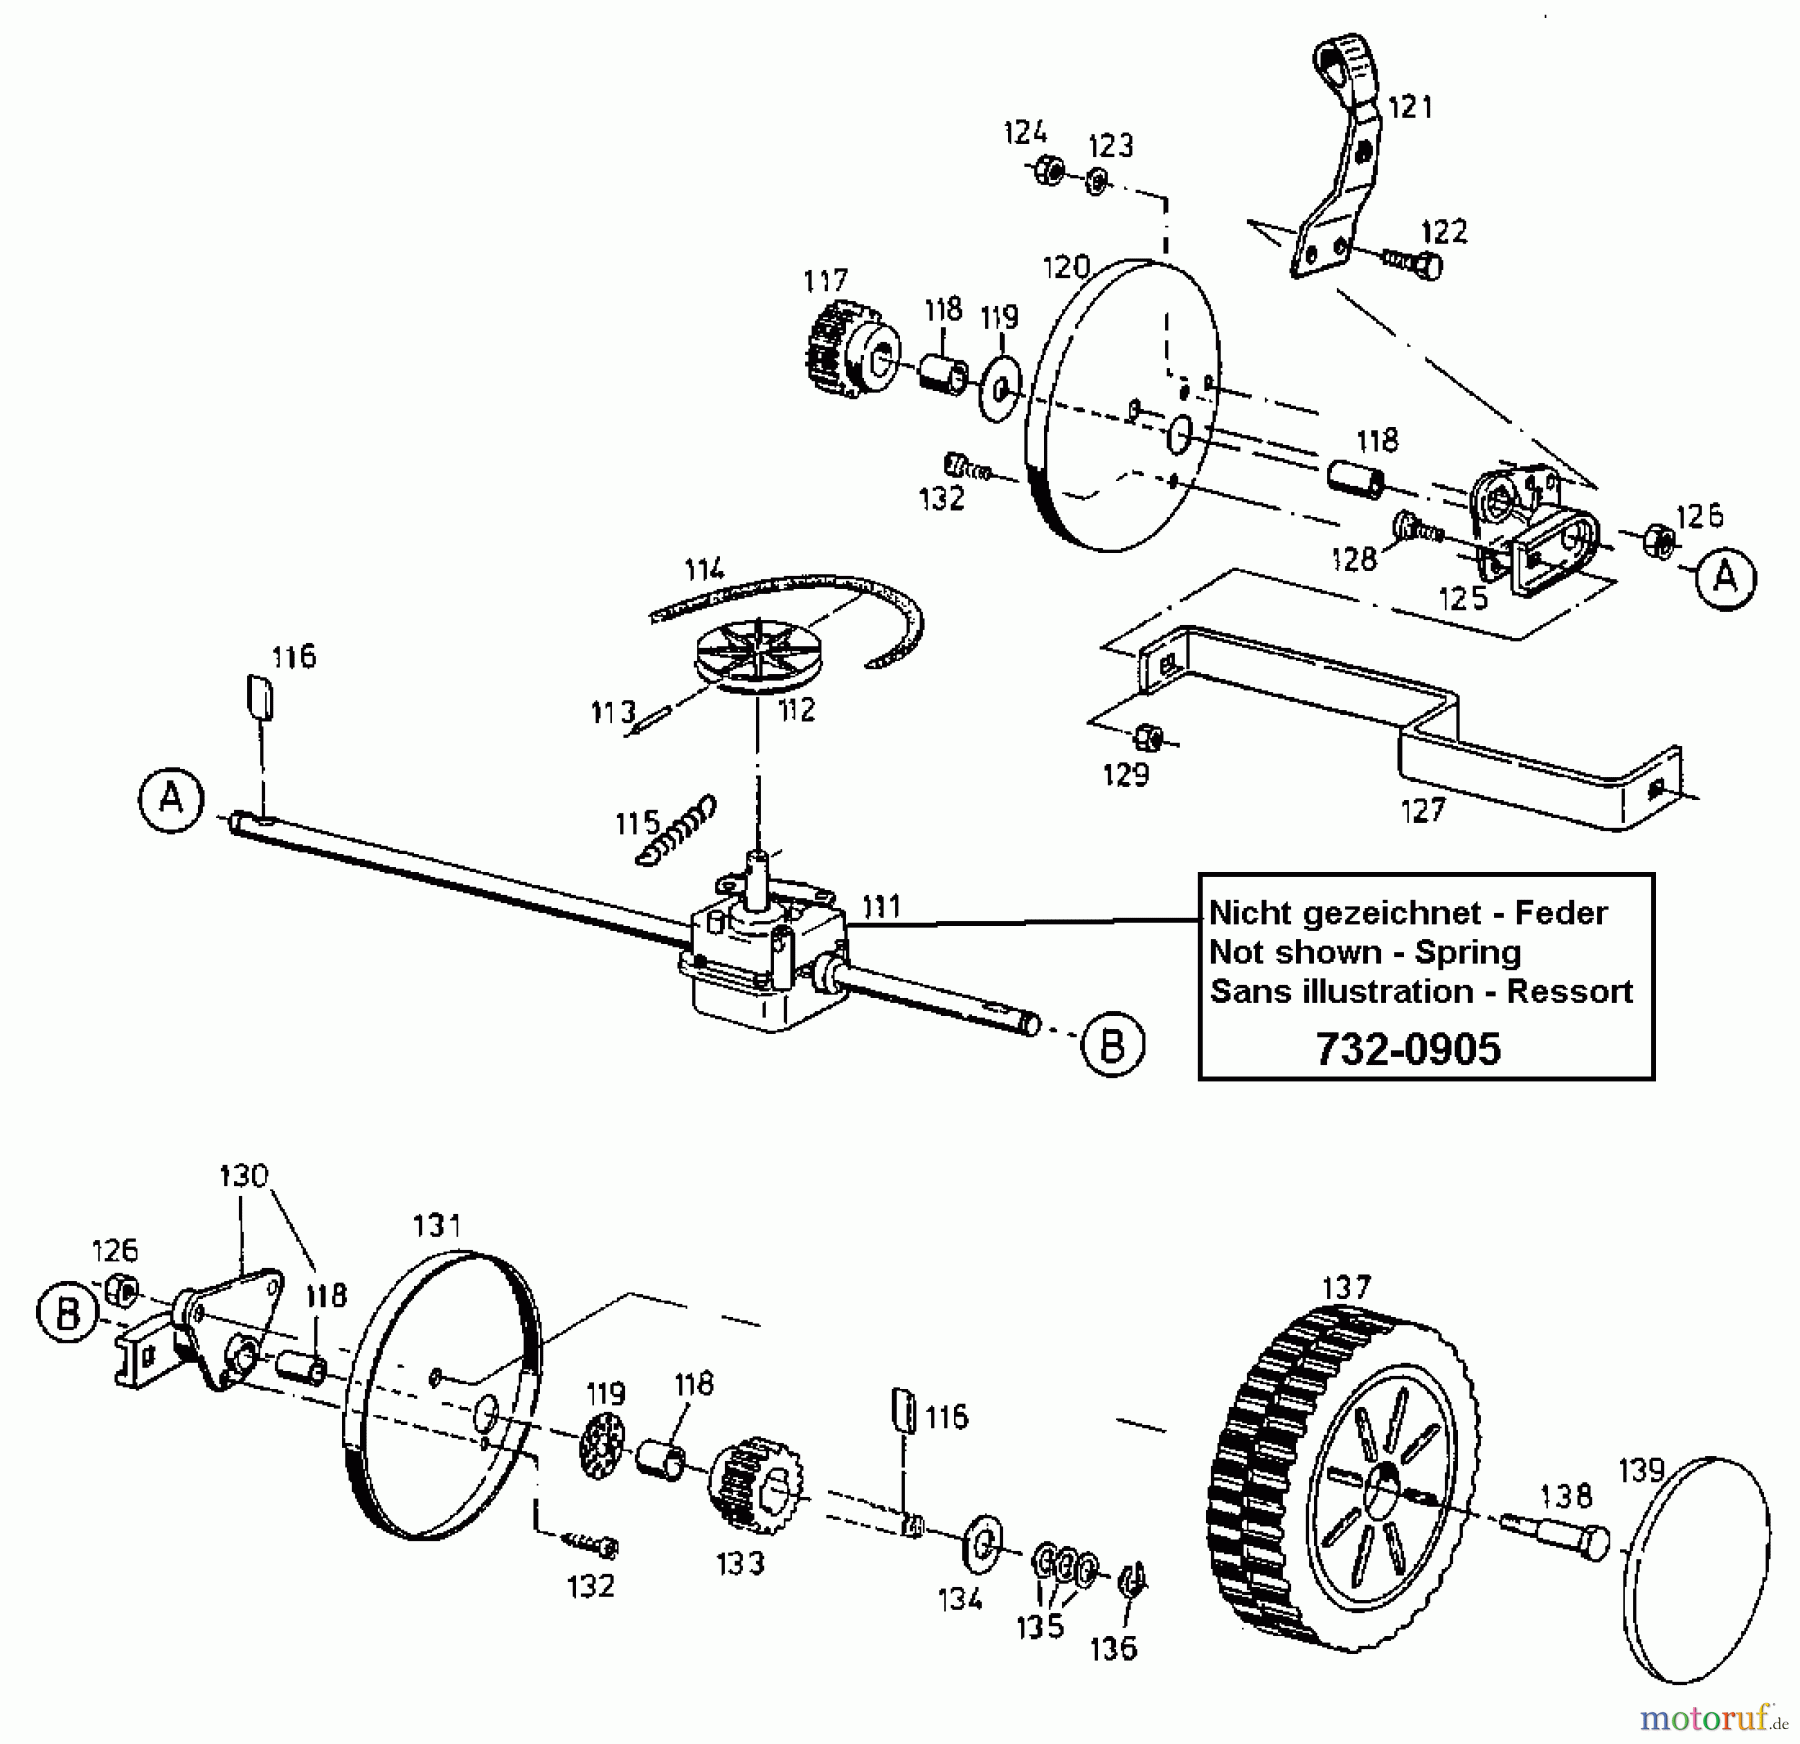  Floraself Petrol mower self propelled 4046 BLRE 12AET12Y668  (1998) Gearbox, Wheels